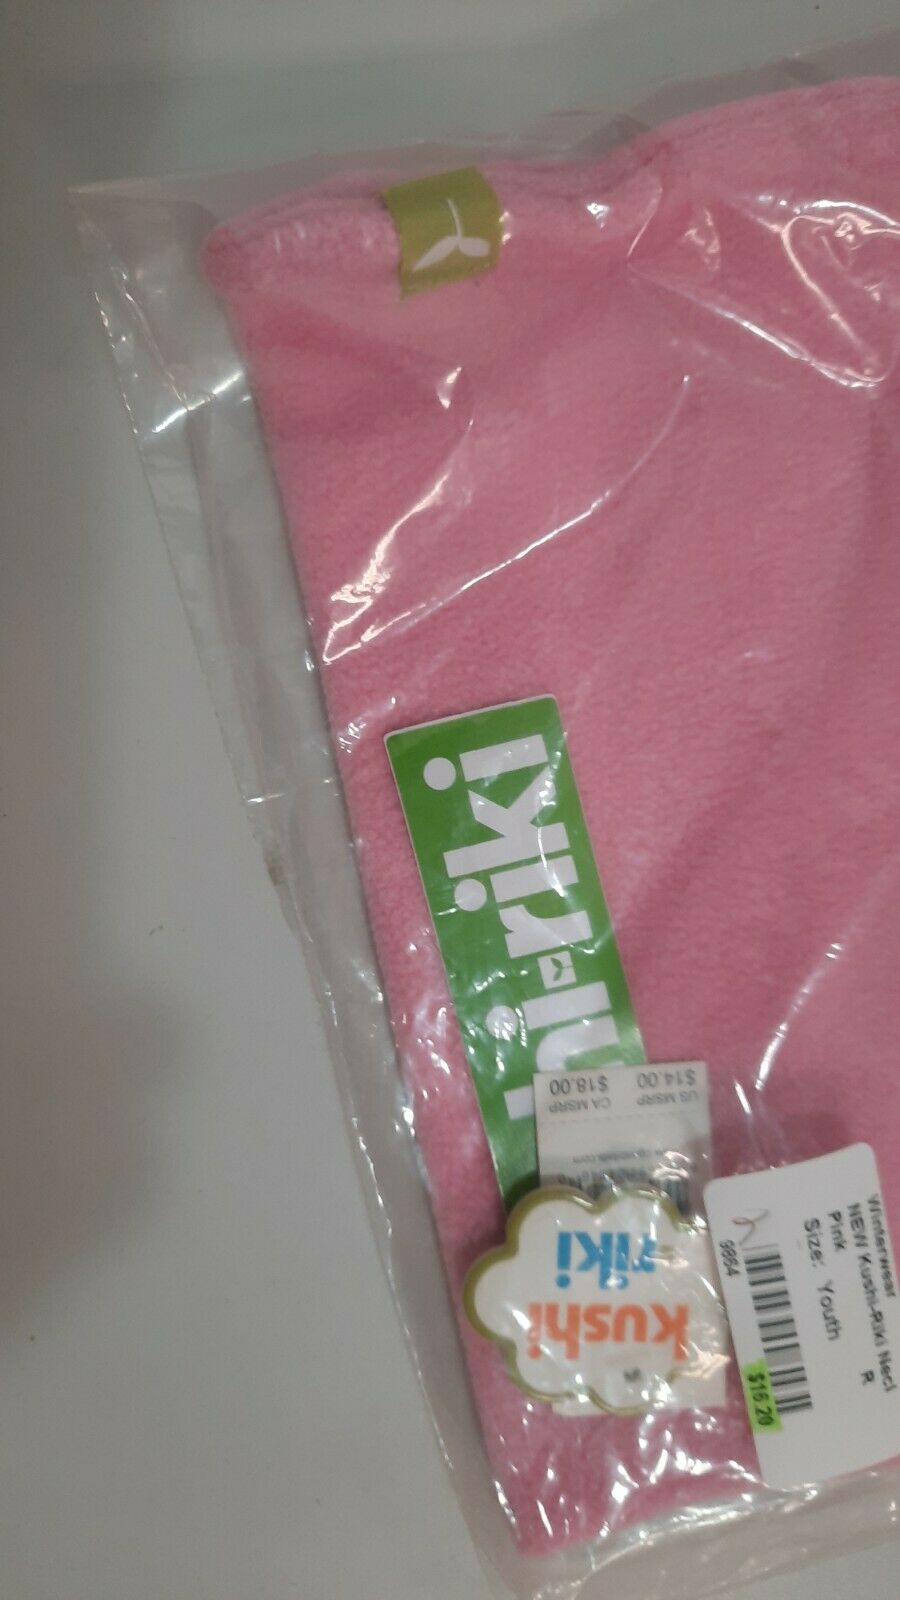 Kushi-riki Neck gaiter Size Youth Color Pink